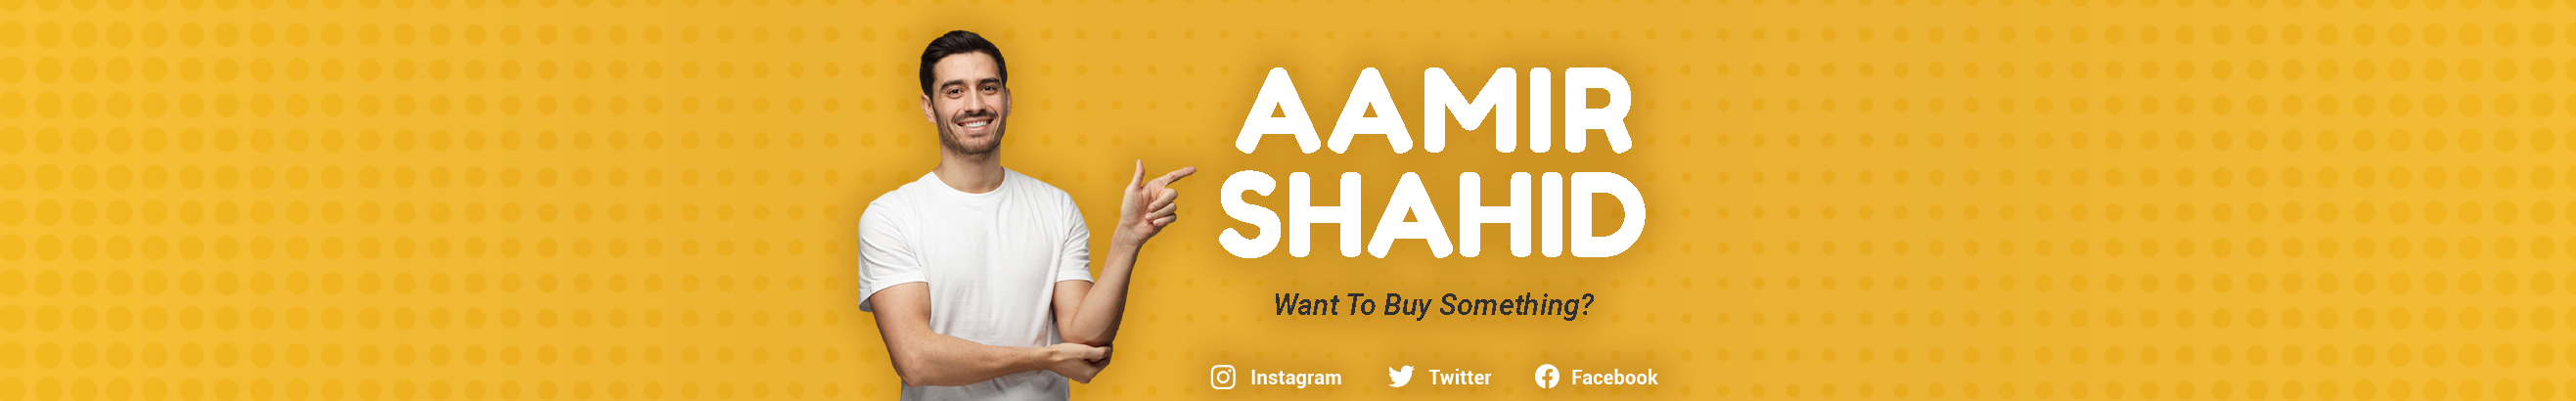 Bannière de profil de Aamir Shahid